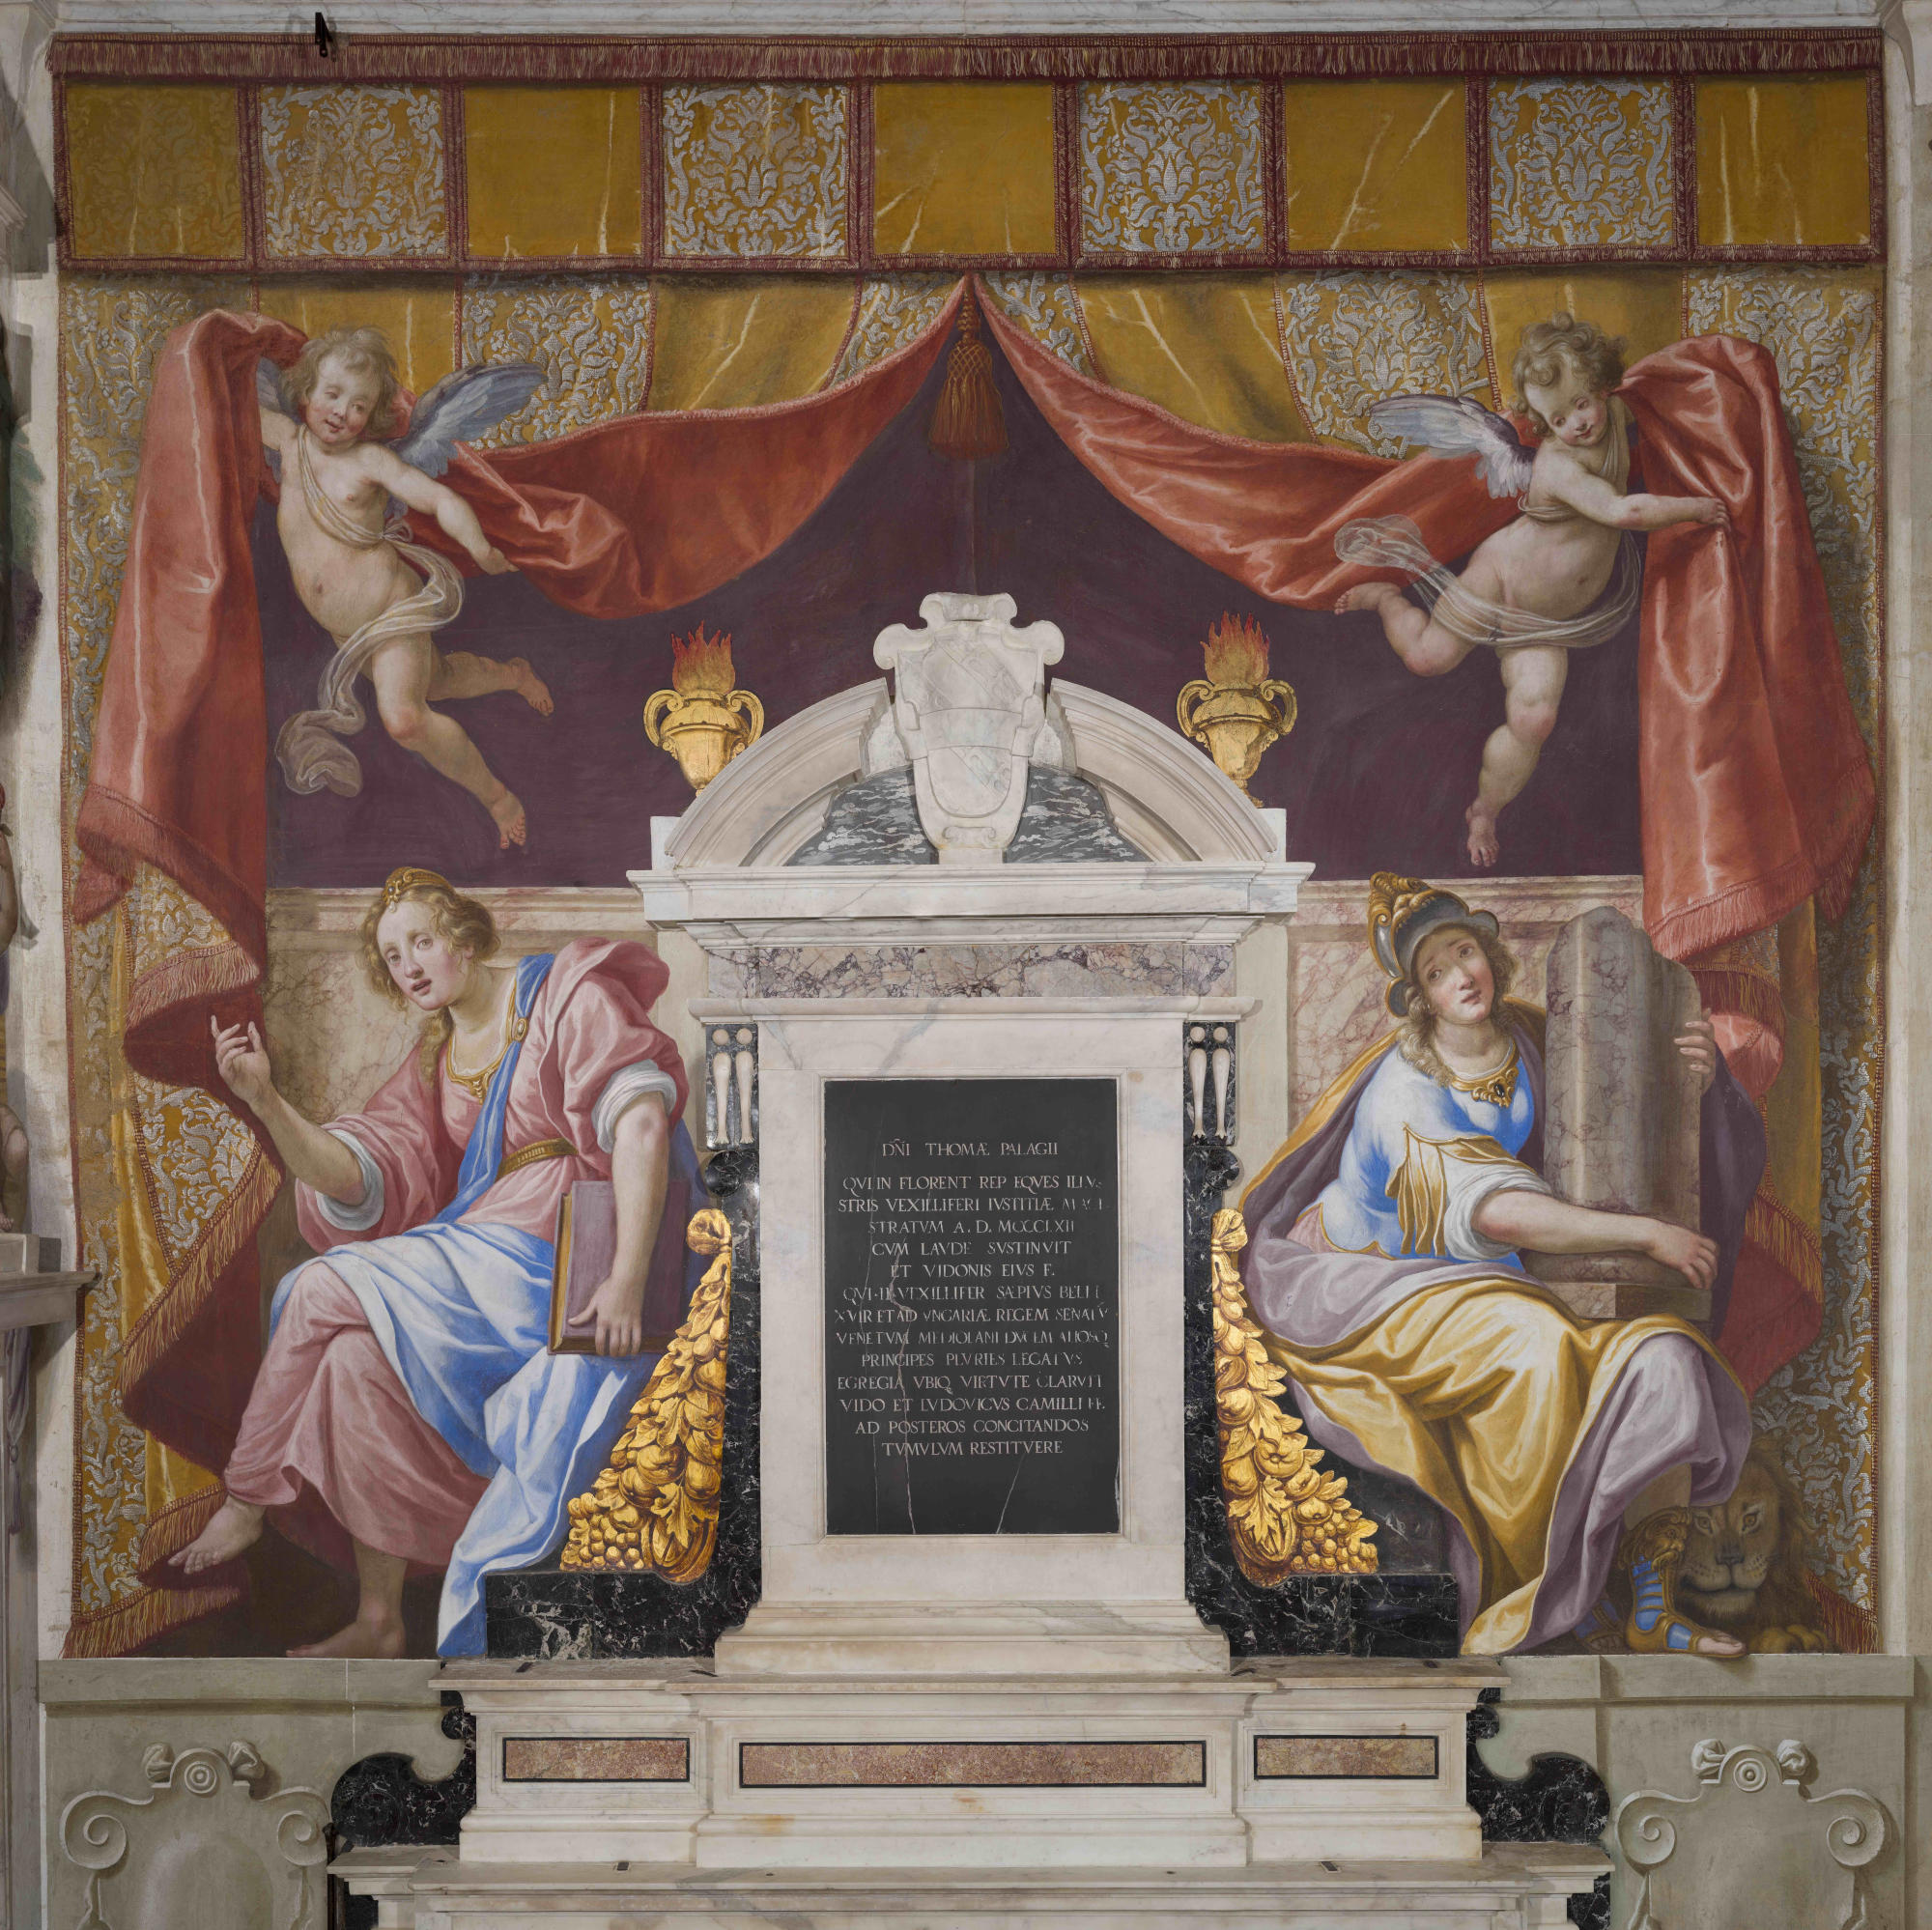 Firenze, restaurata la Cappella di san Nicola nella Basilica della Santissima Annunziata